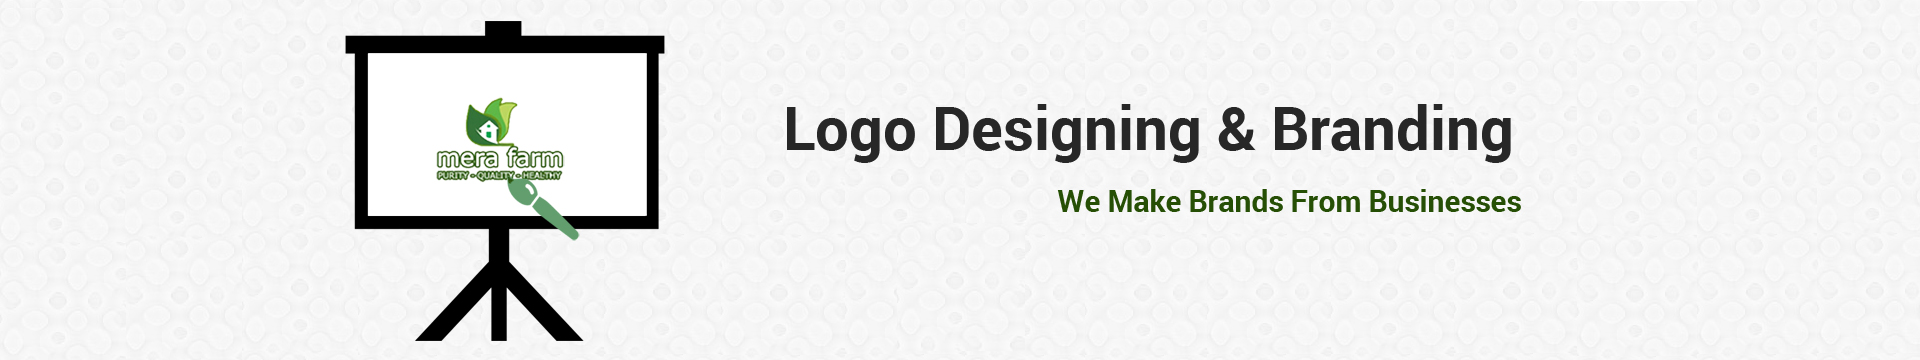 Logo Designing & Branding